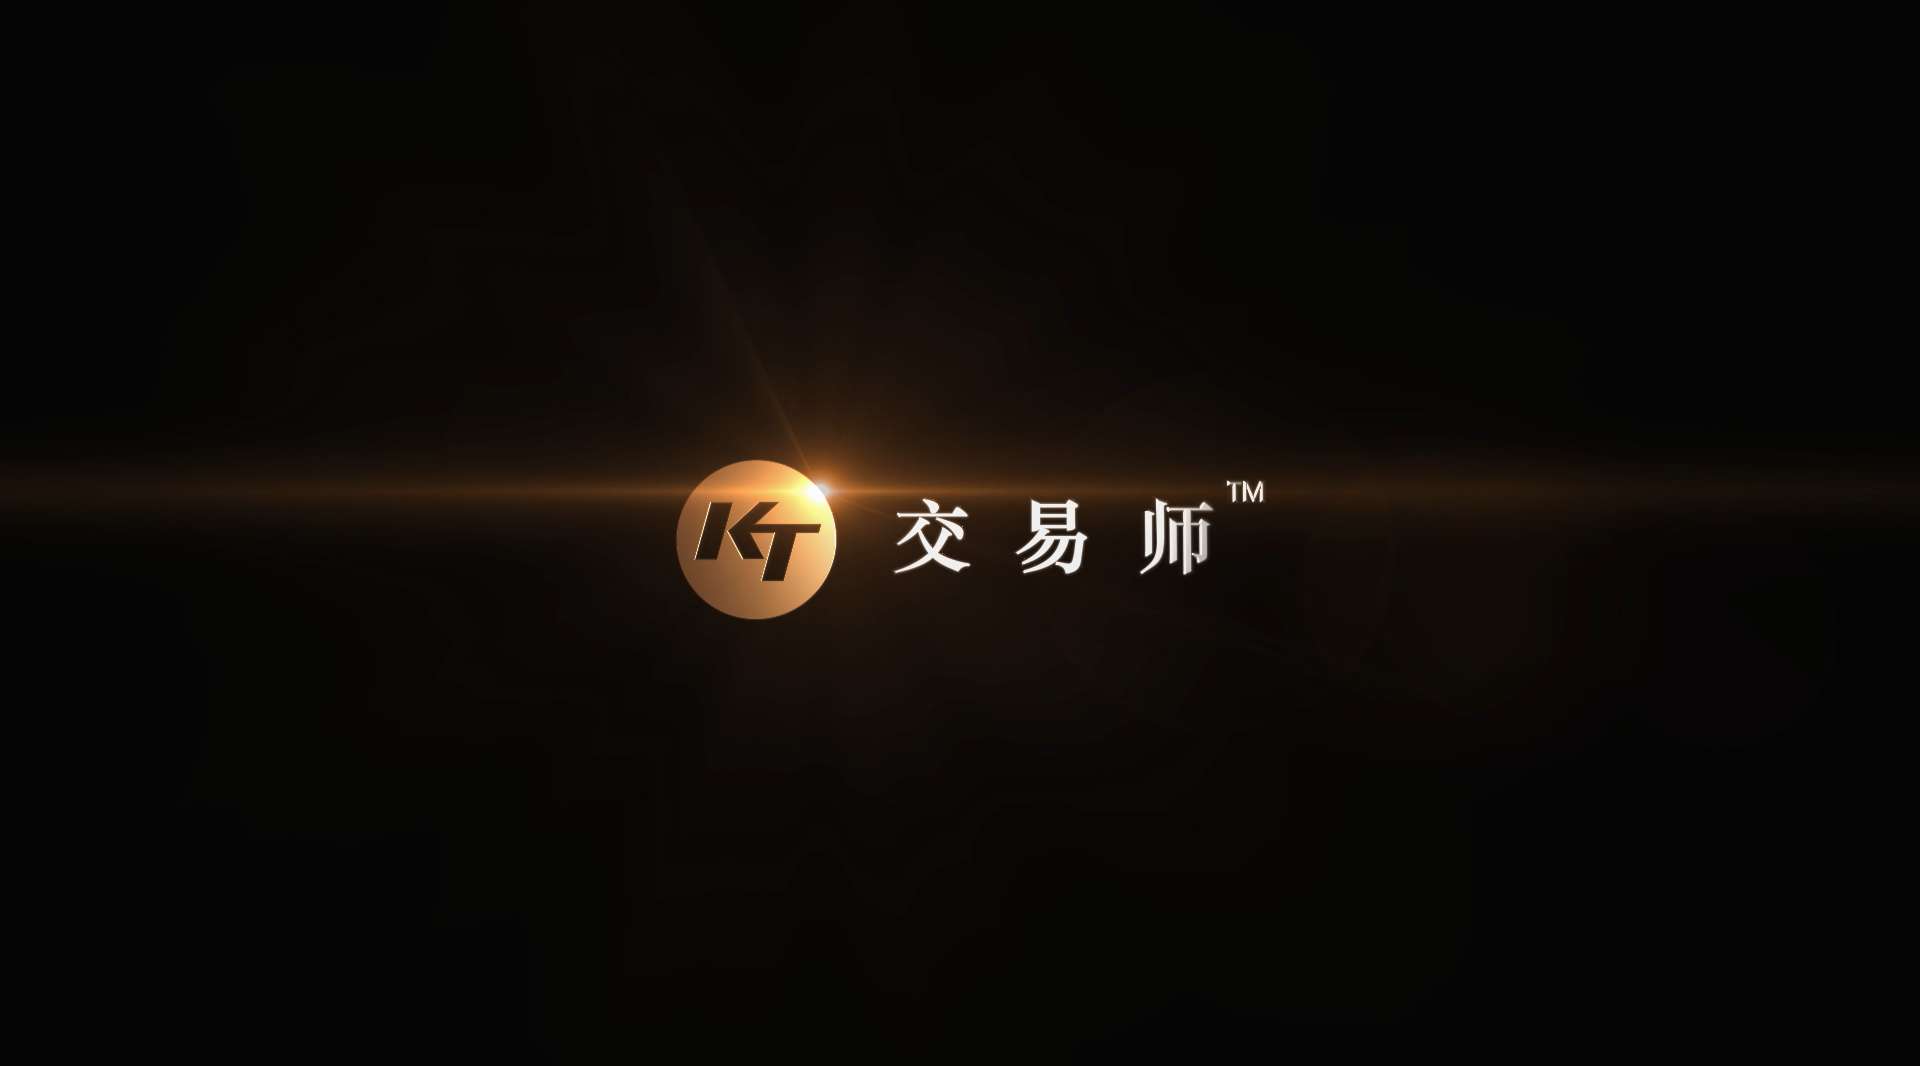 《KT交易师六屏系统》宣传片